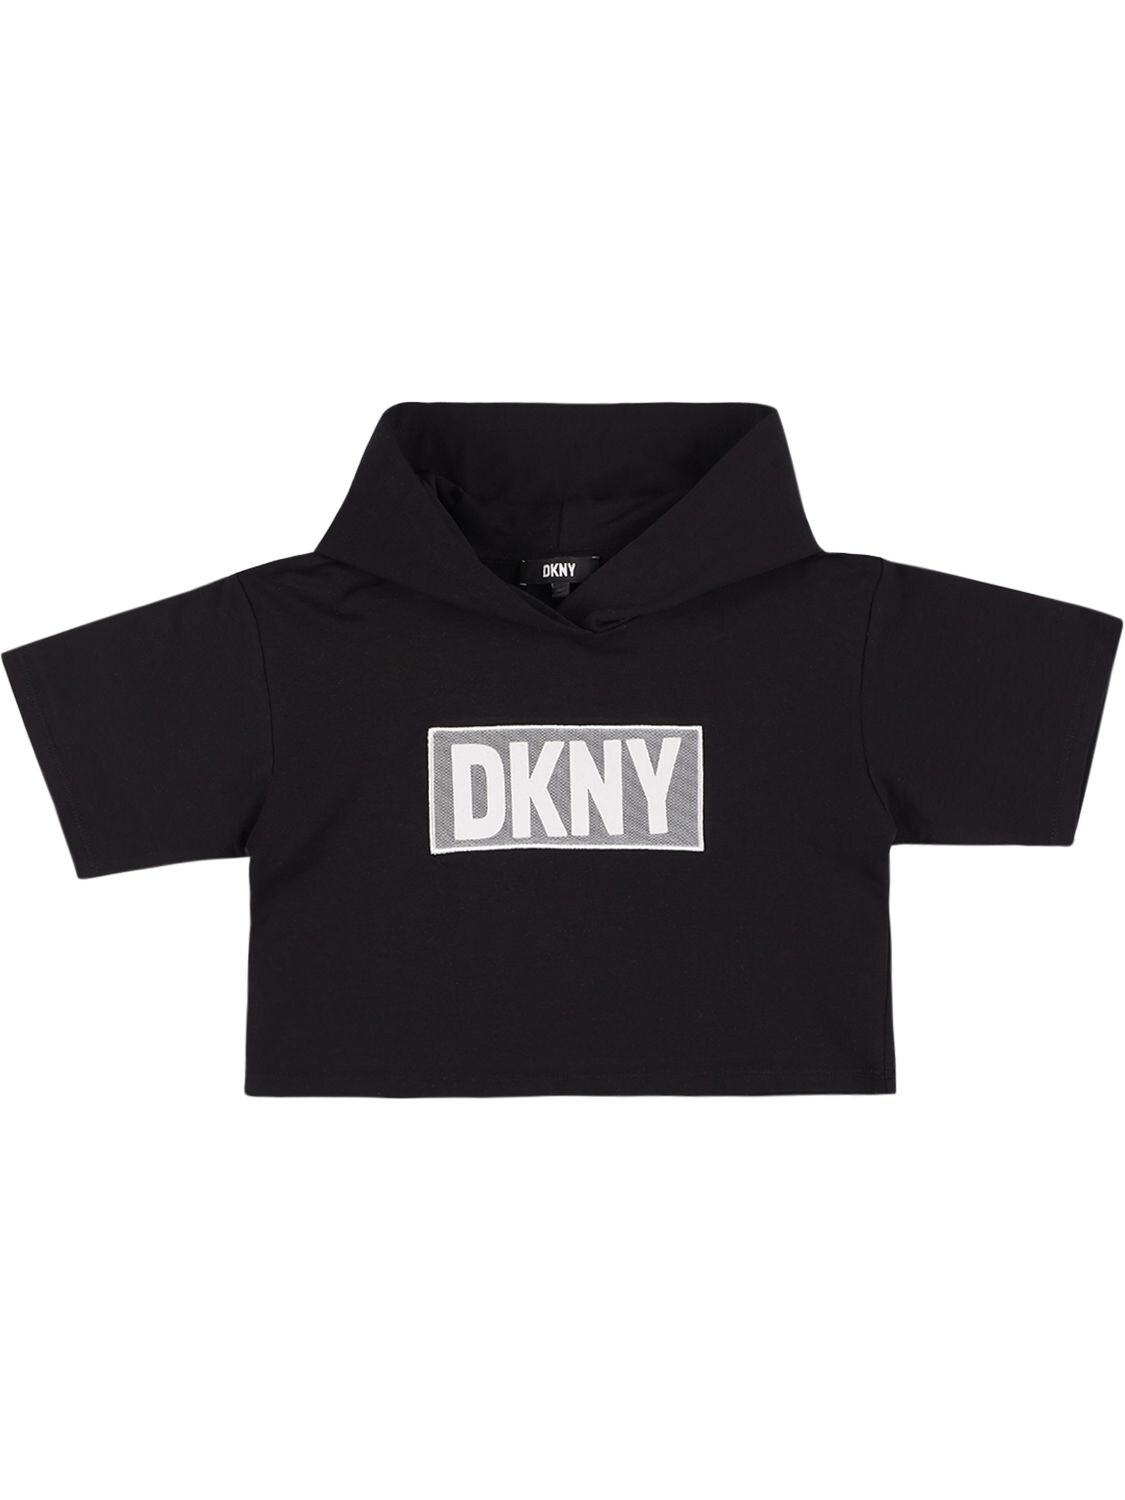 T-shirt Cropped In Cotone Con Cappuccio - DKNY - Modalova